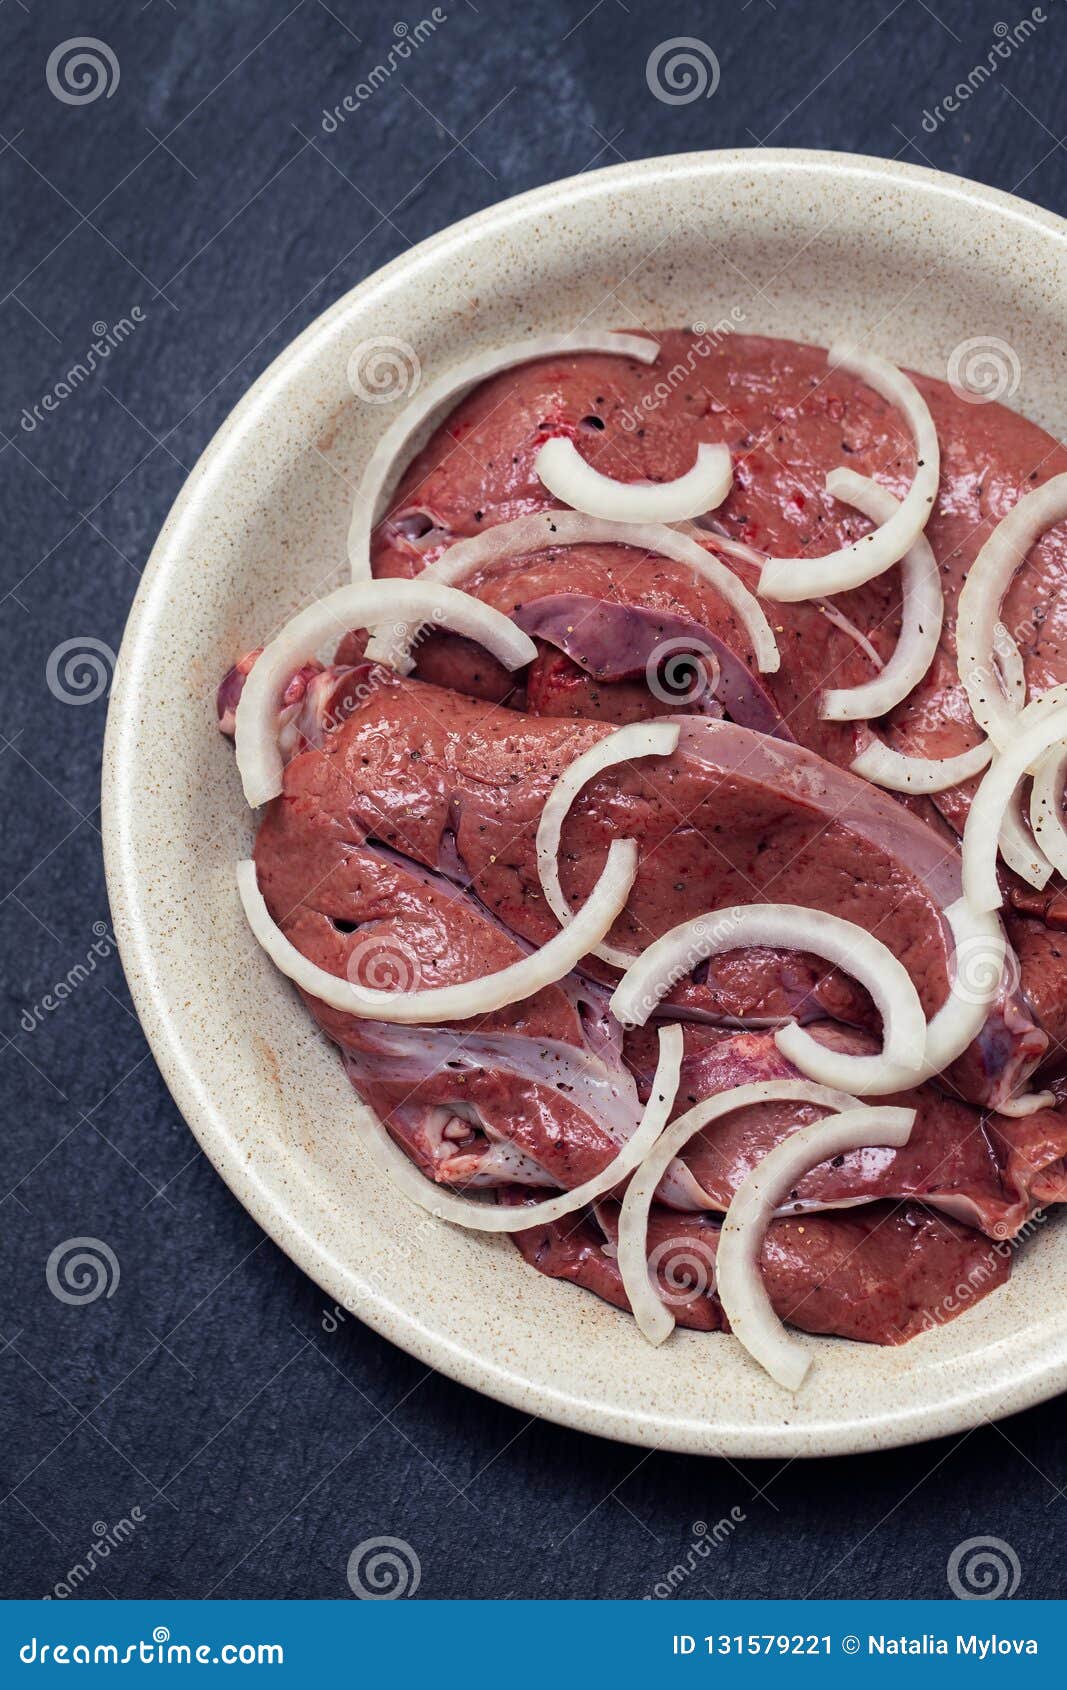 Fígado de frango frito com cebola e salsa em um prato fundo escuro